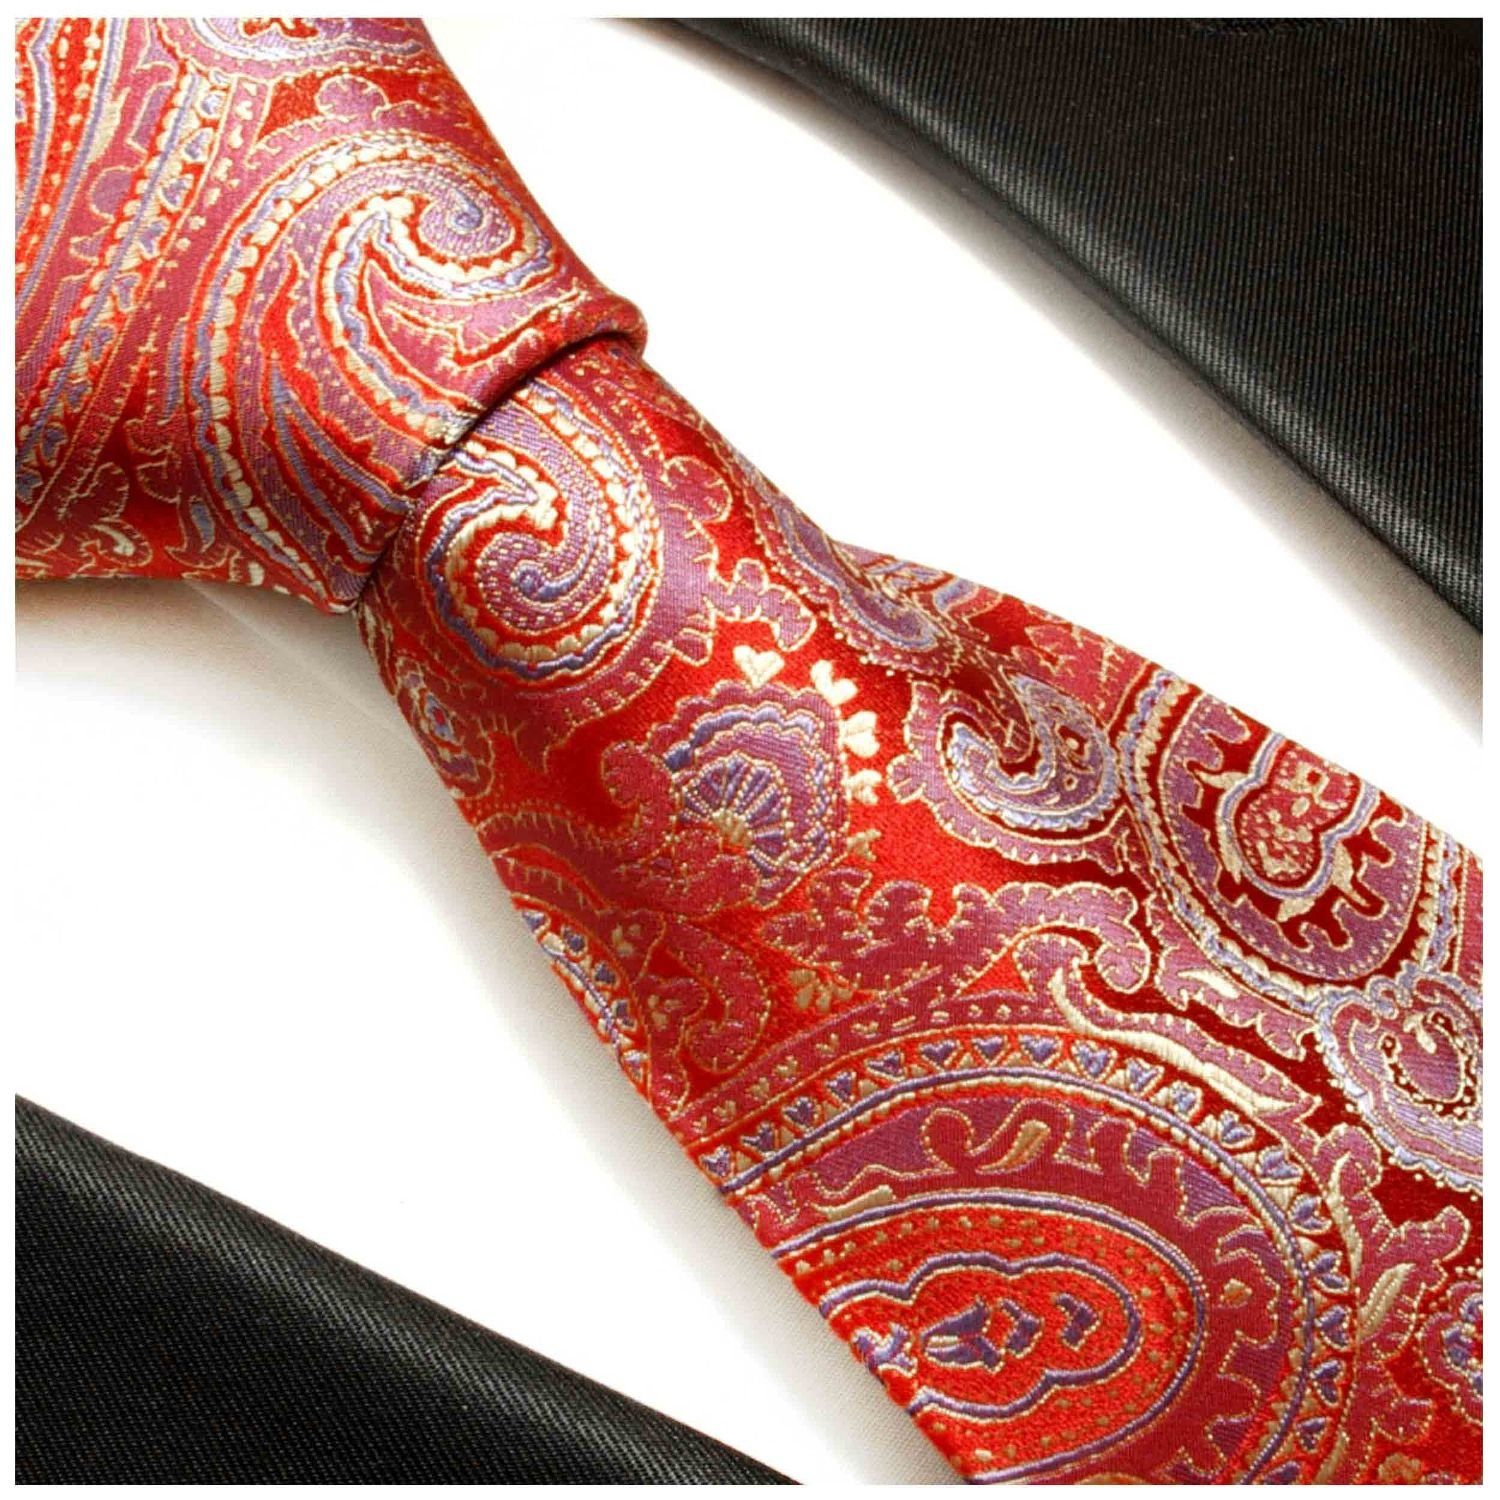 Herren Seidenkrawatte Schmal blau rot Schlips Seide brokat Malone Paul gold (6cm), 696 paisley Elegante Krawatte 100%